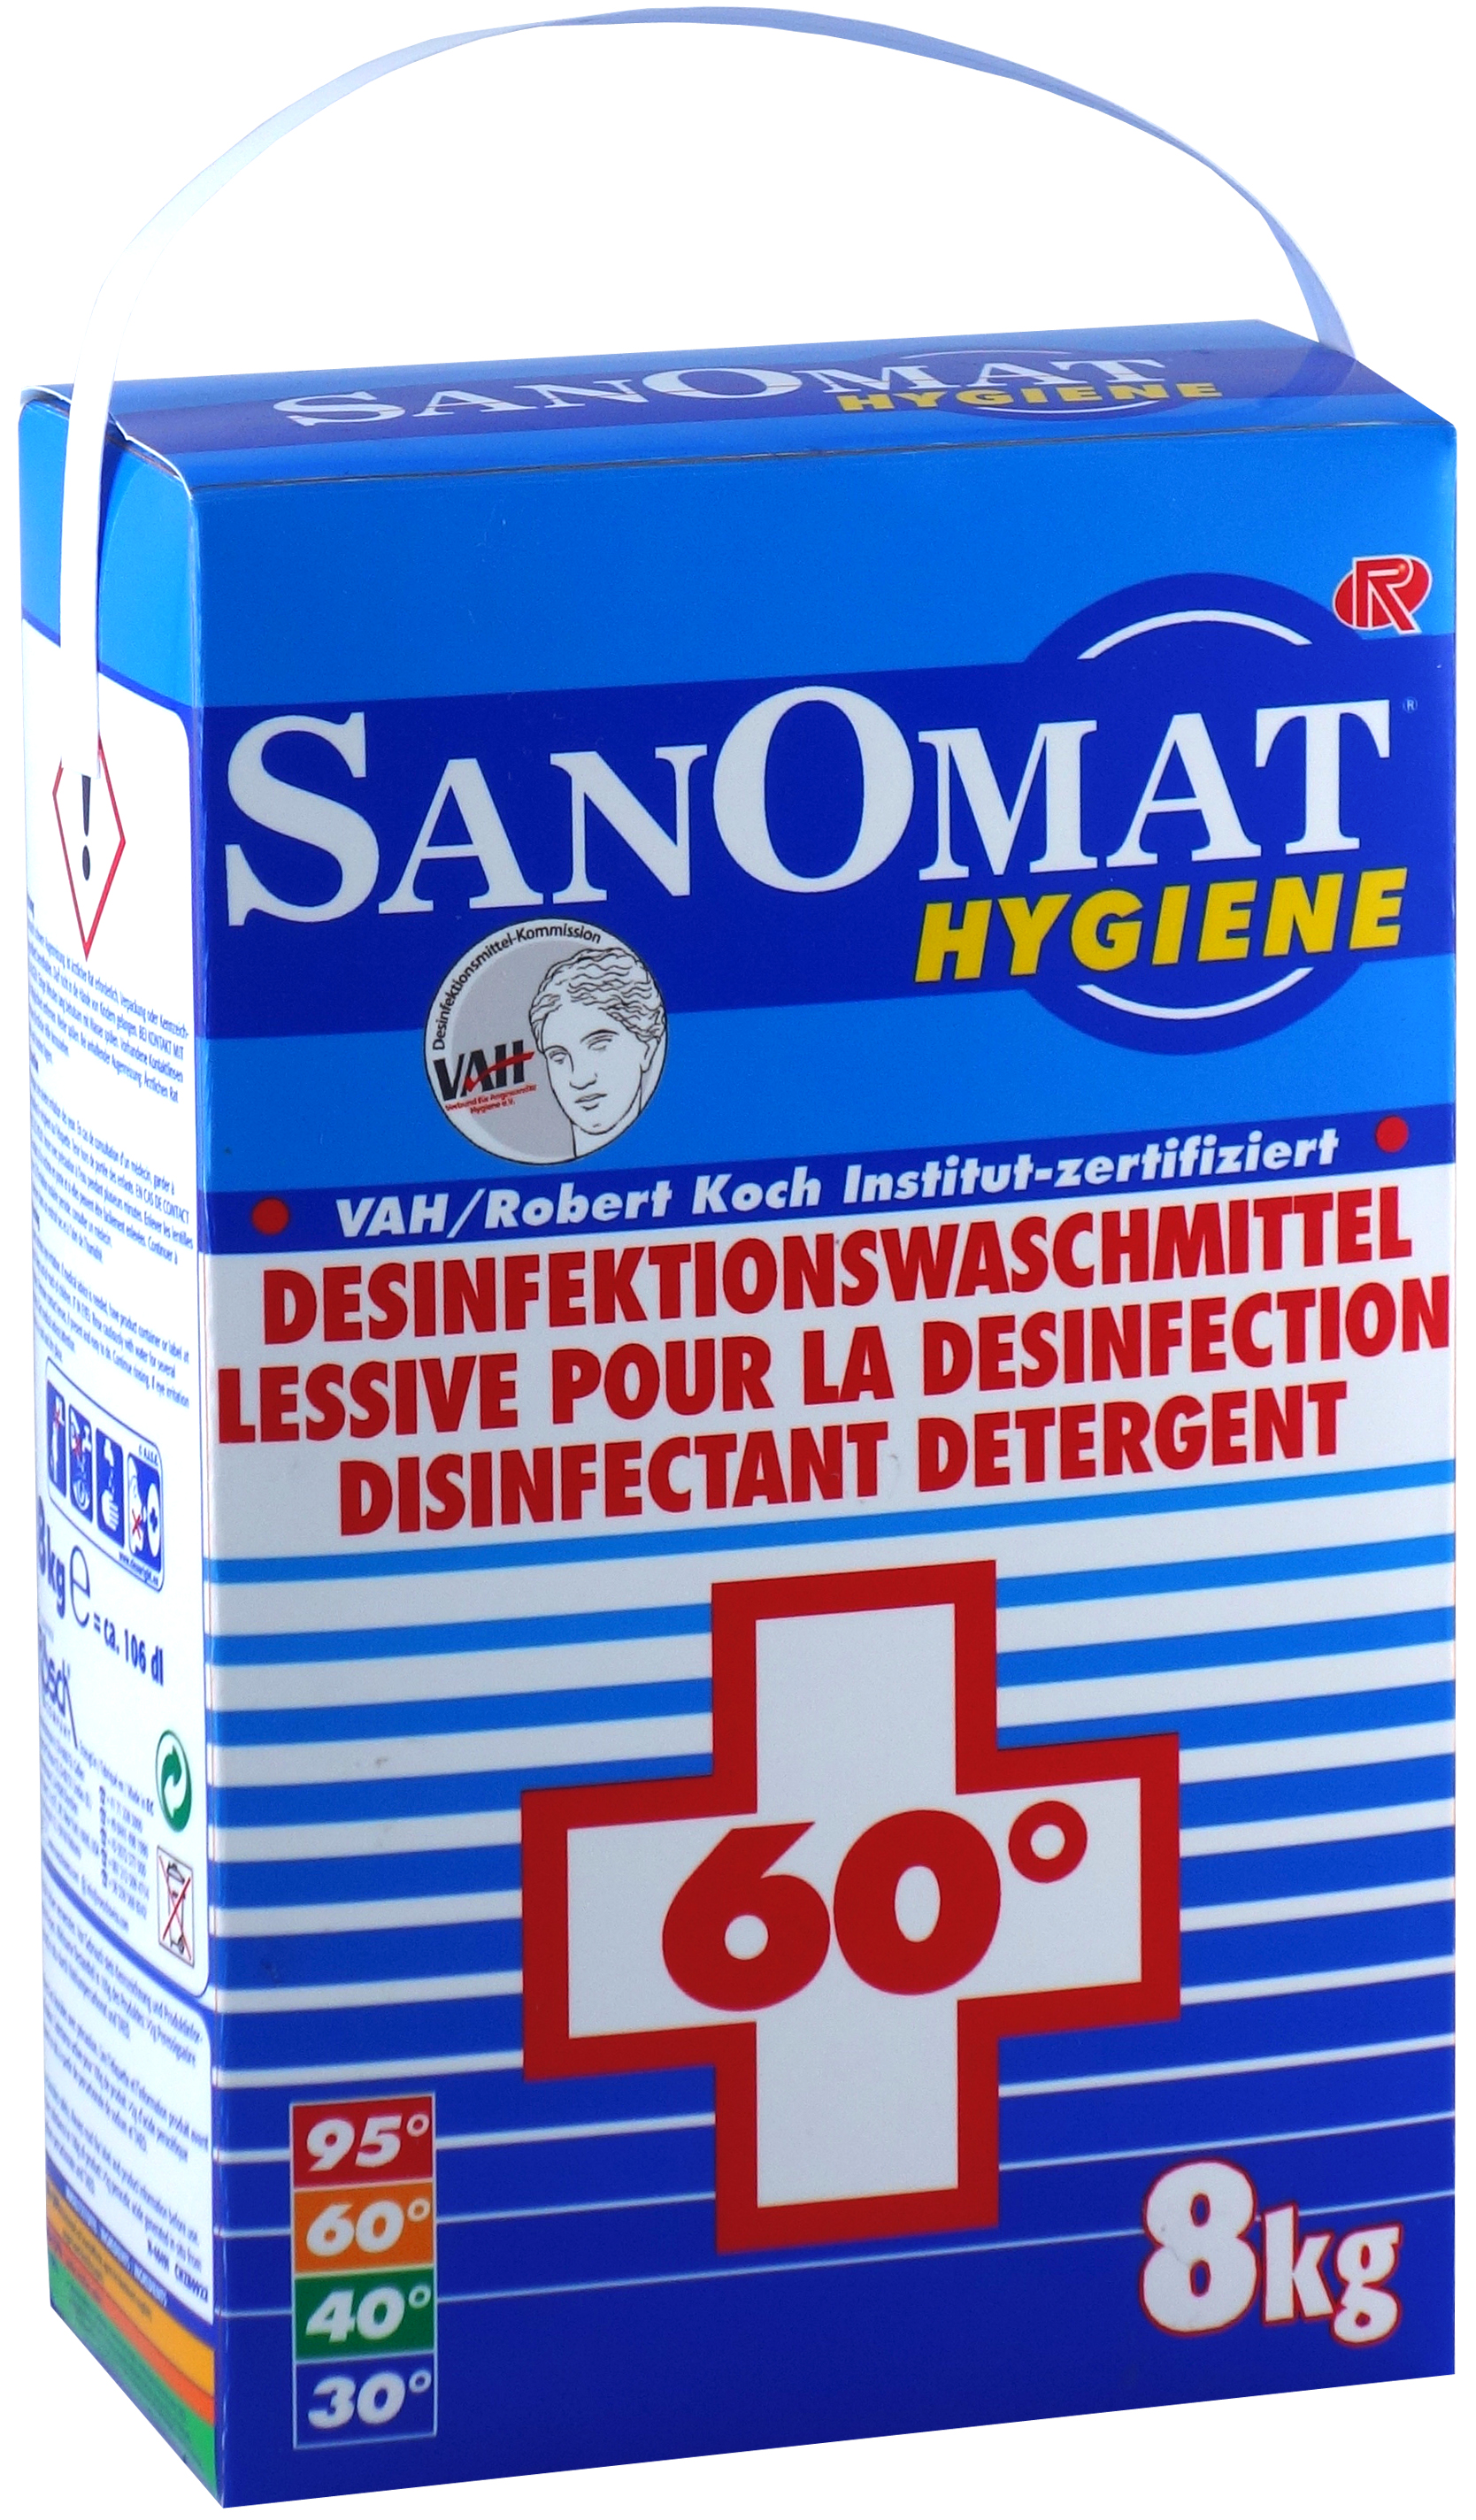 SANOMAT Hygiene Desinfektionswaschmittel, 8 kg Tragepackung